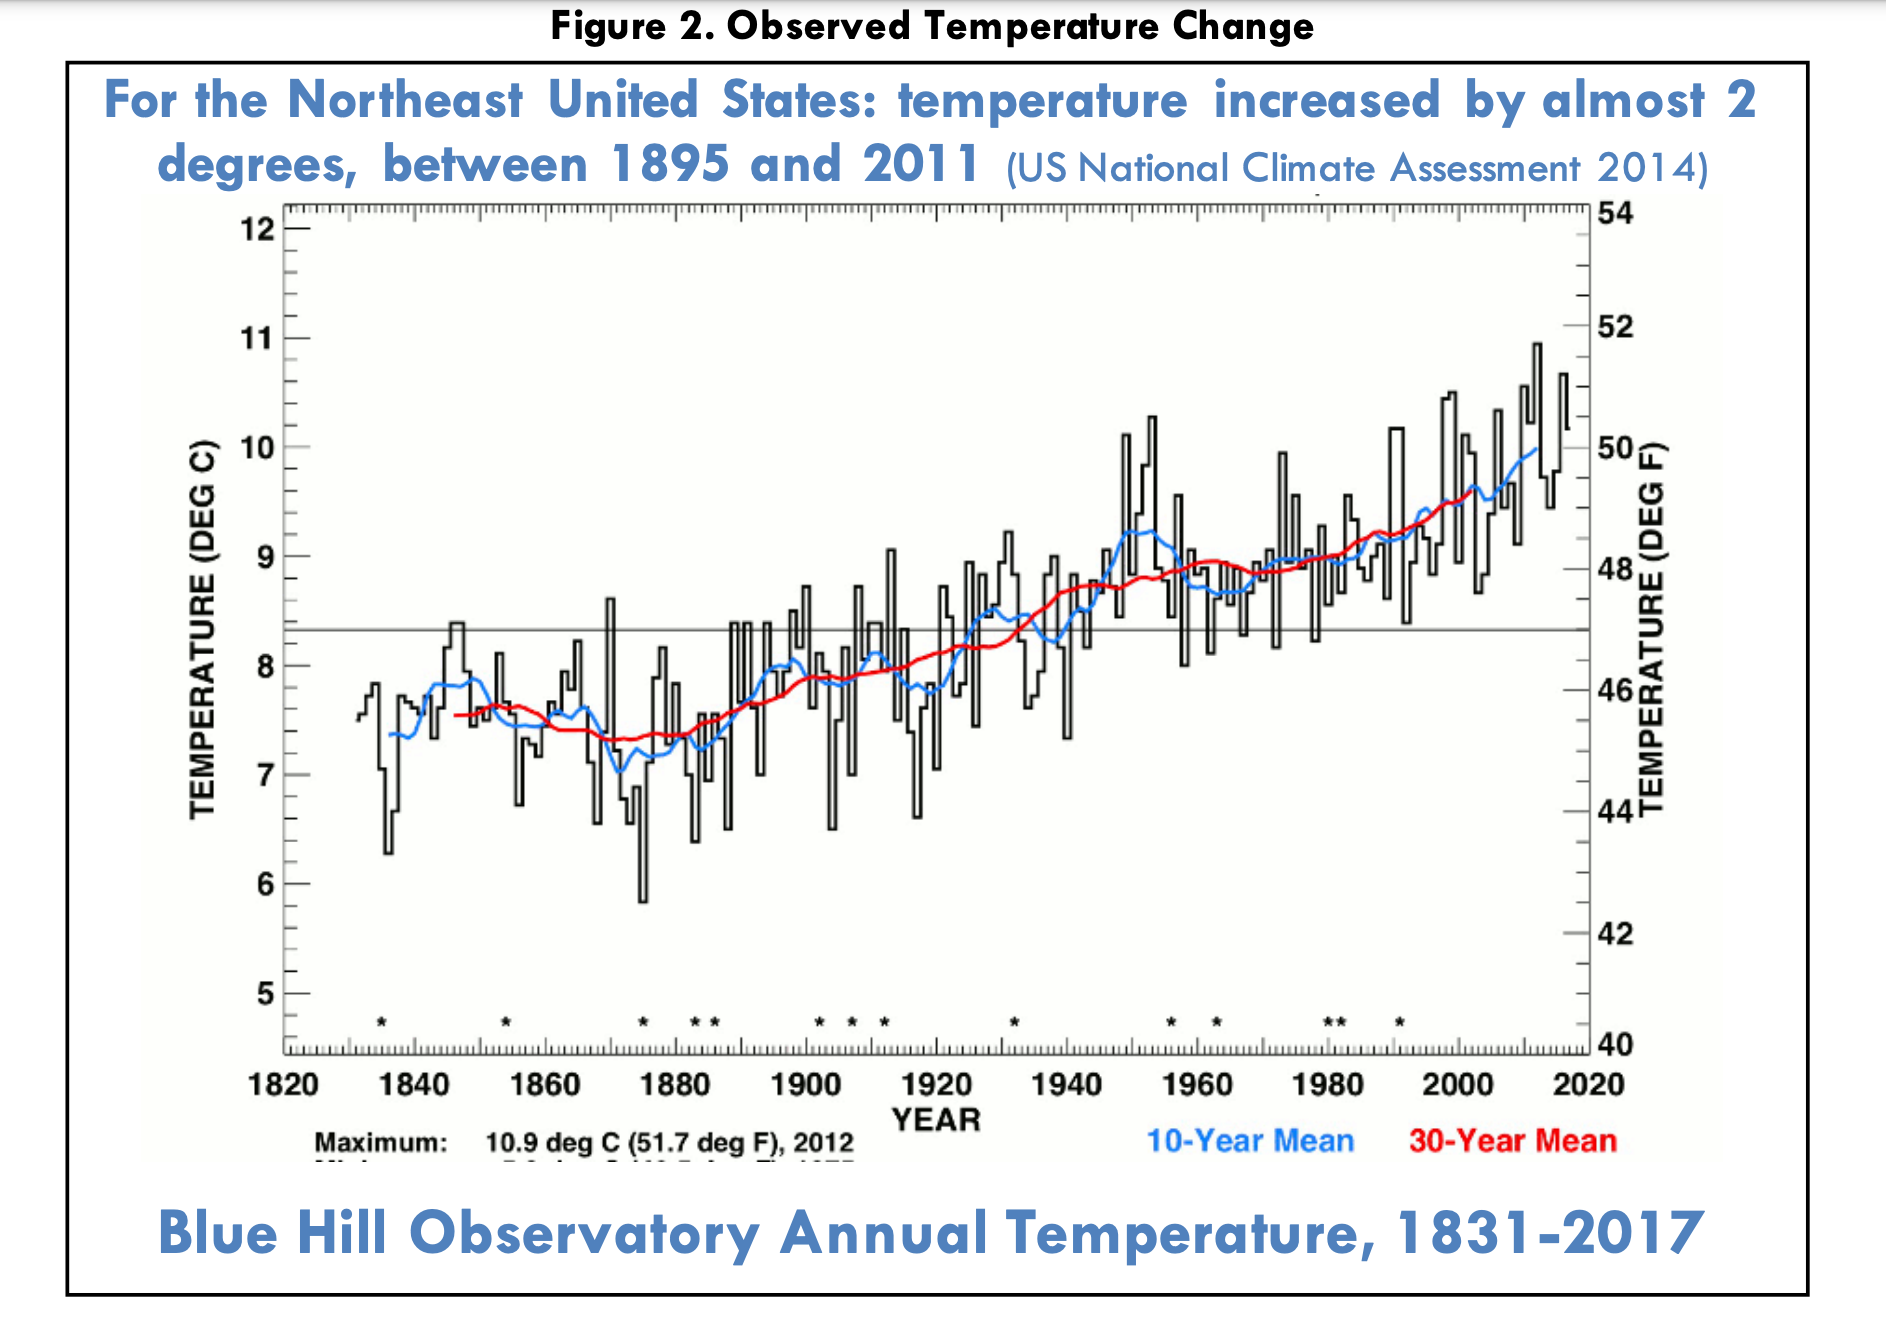 Datos reunidos en el Observatorio Blue Hill cerca de Newton, Massachusetts, muestran el aumento de la temperatura anual a lo largo de casi 200 años